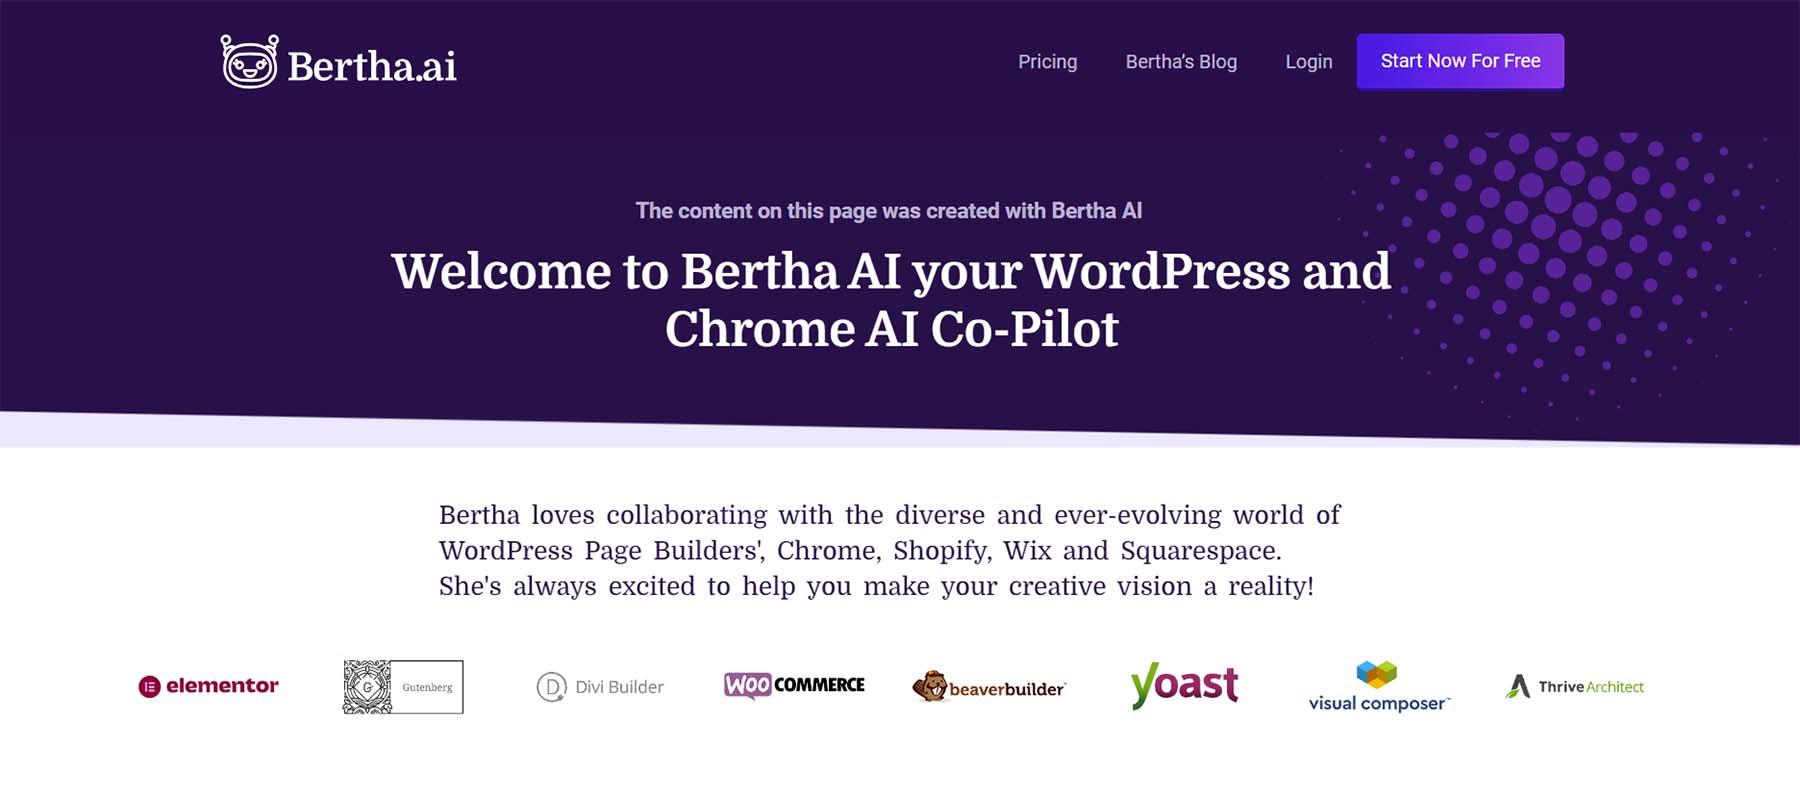 Bertha AI, a WordPress copilot